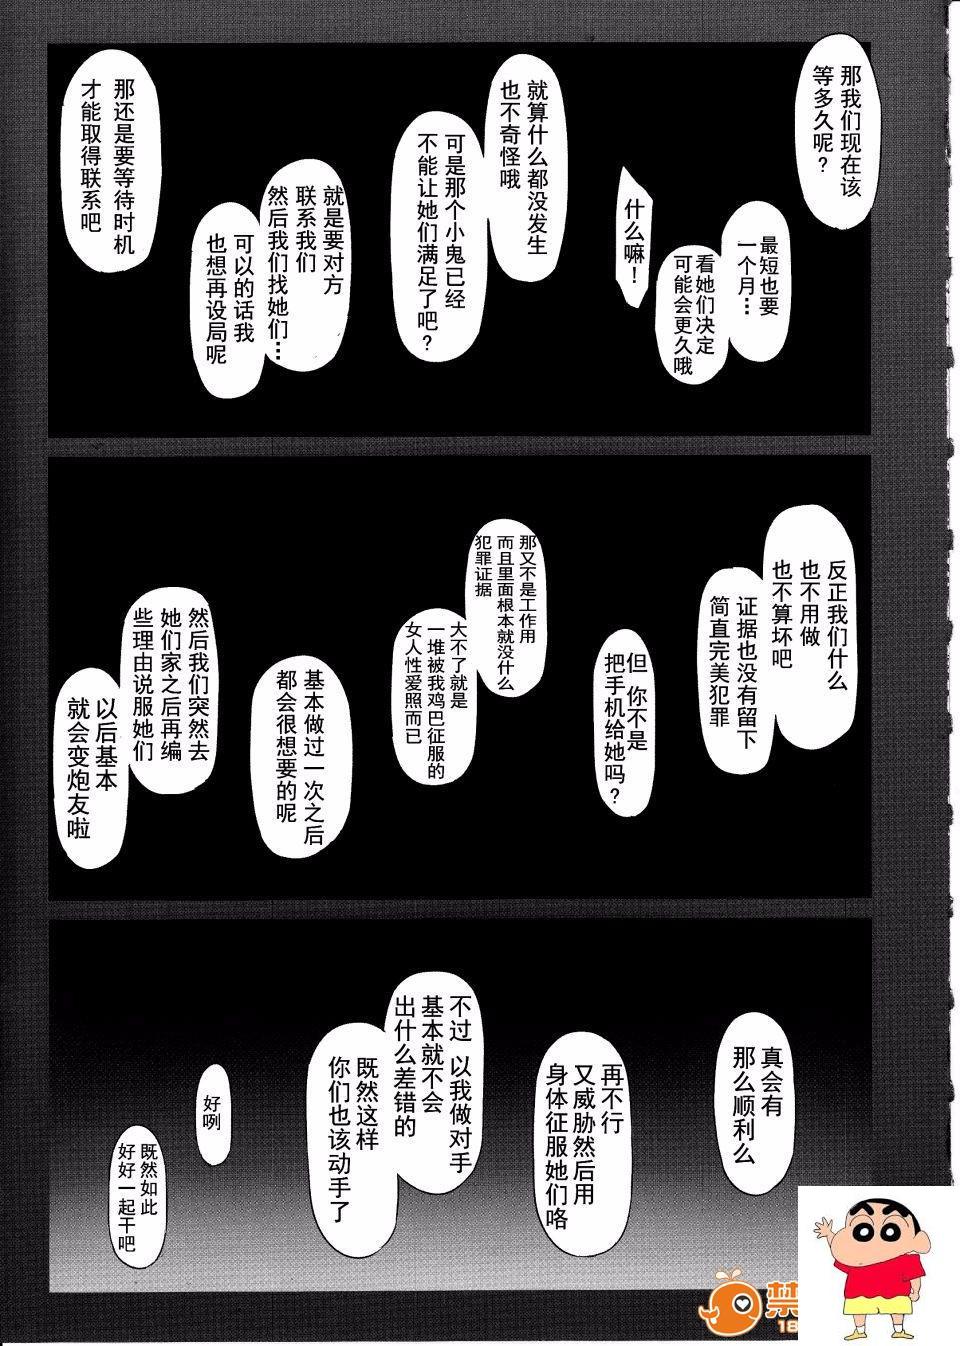 [MTSP (Jin)] 橘さん家ノ男性事情 小説版挿絵 オマケの本-第1章-图片49